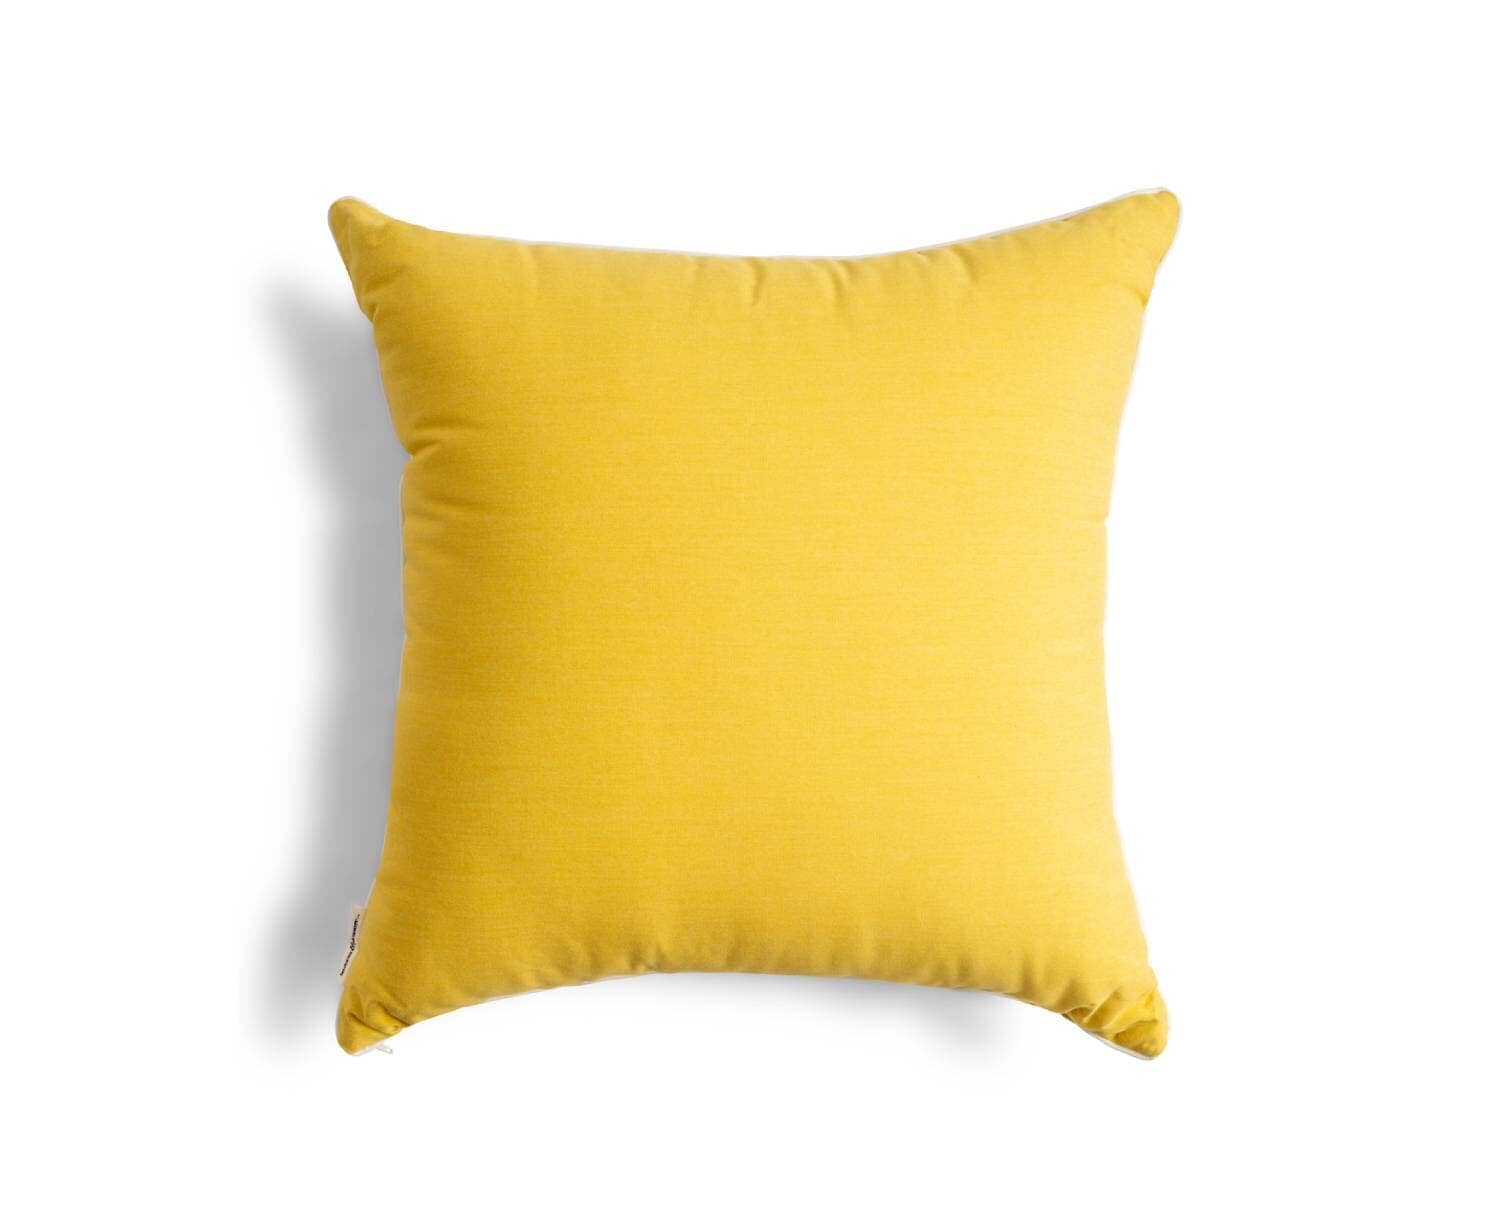 The Euro Throw Pillow - Rivie Mimosa Euro Throw Pillow Business & Pleasure Co Aus 